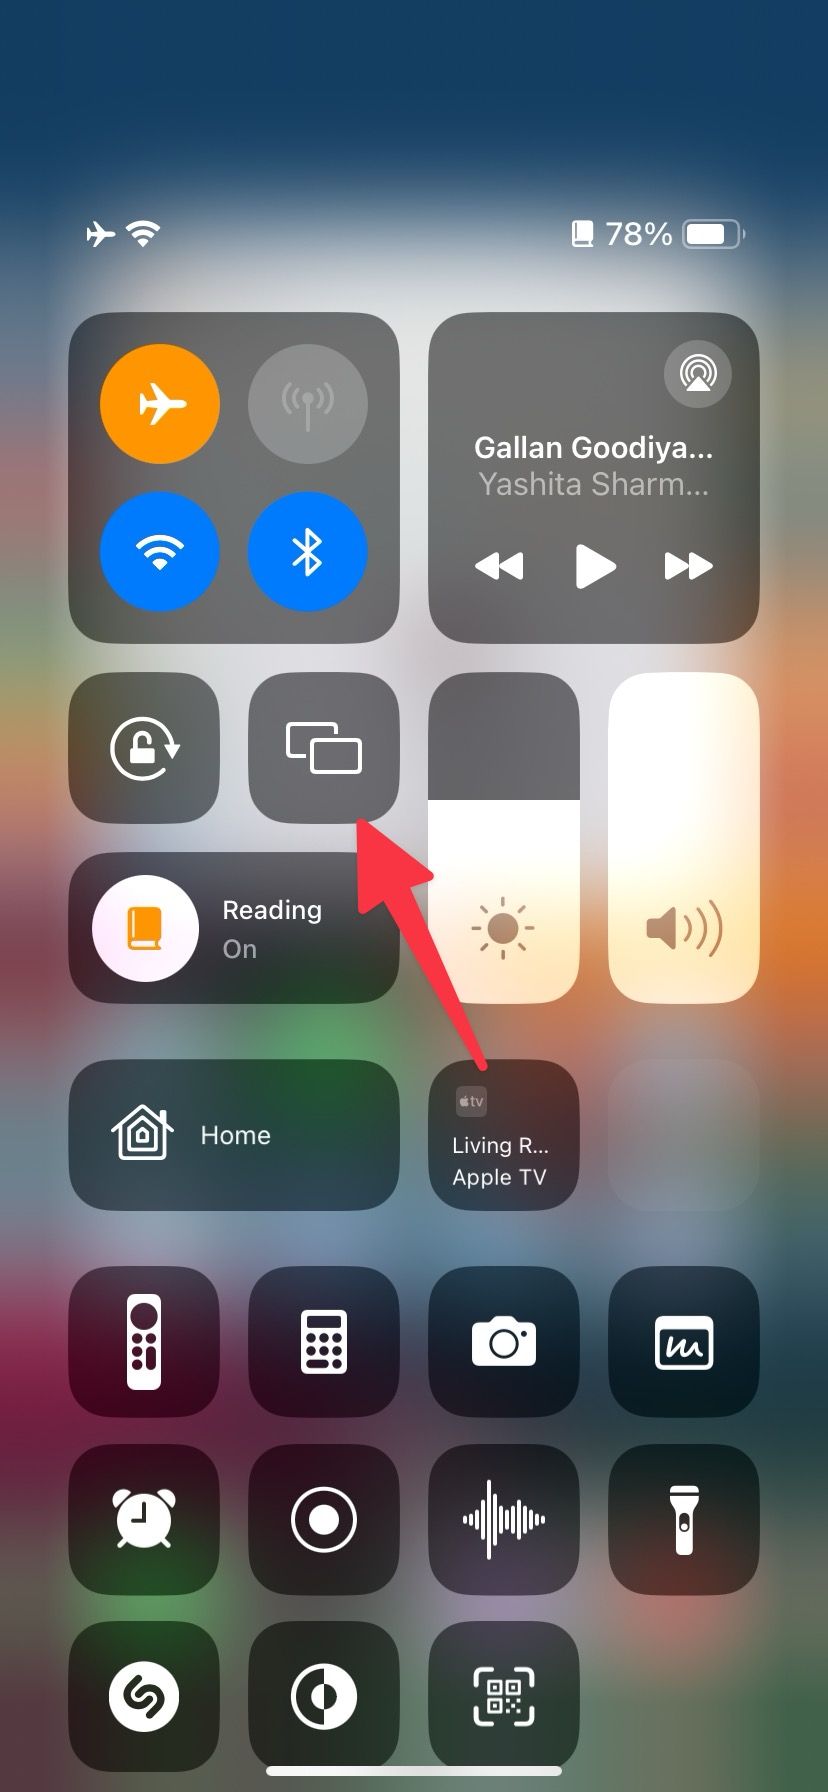 Habilite o espelhamento de tela no iPhone